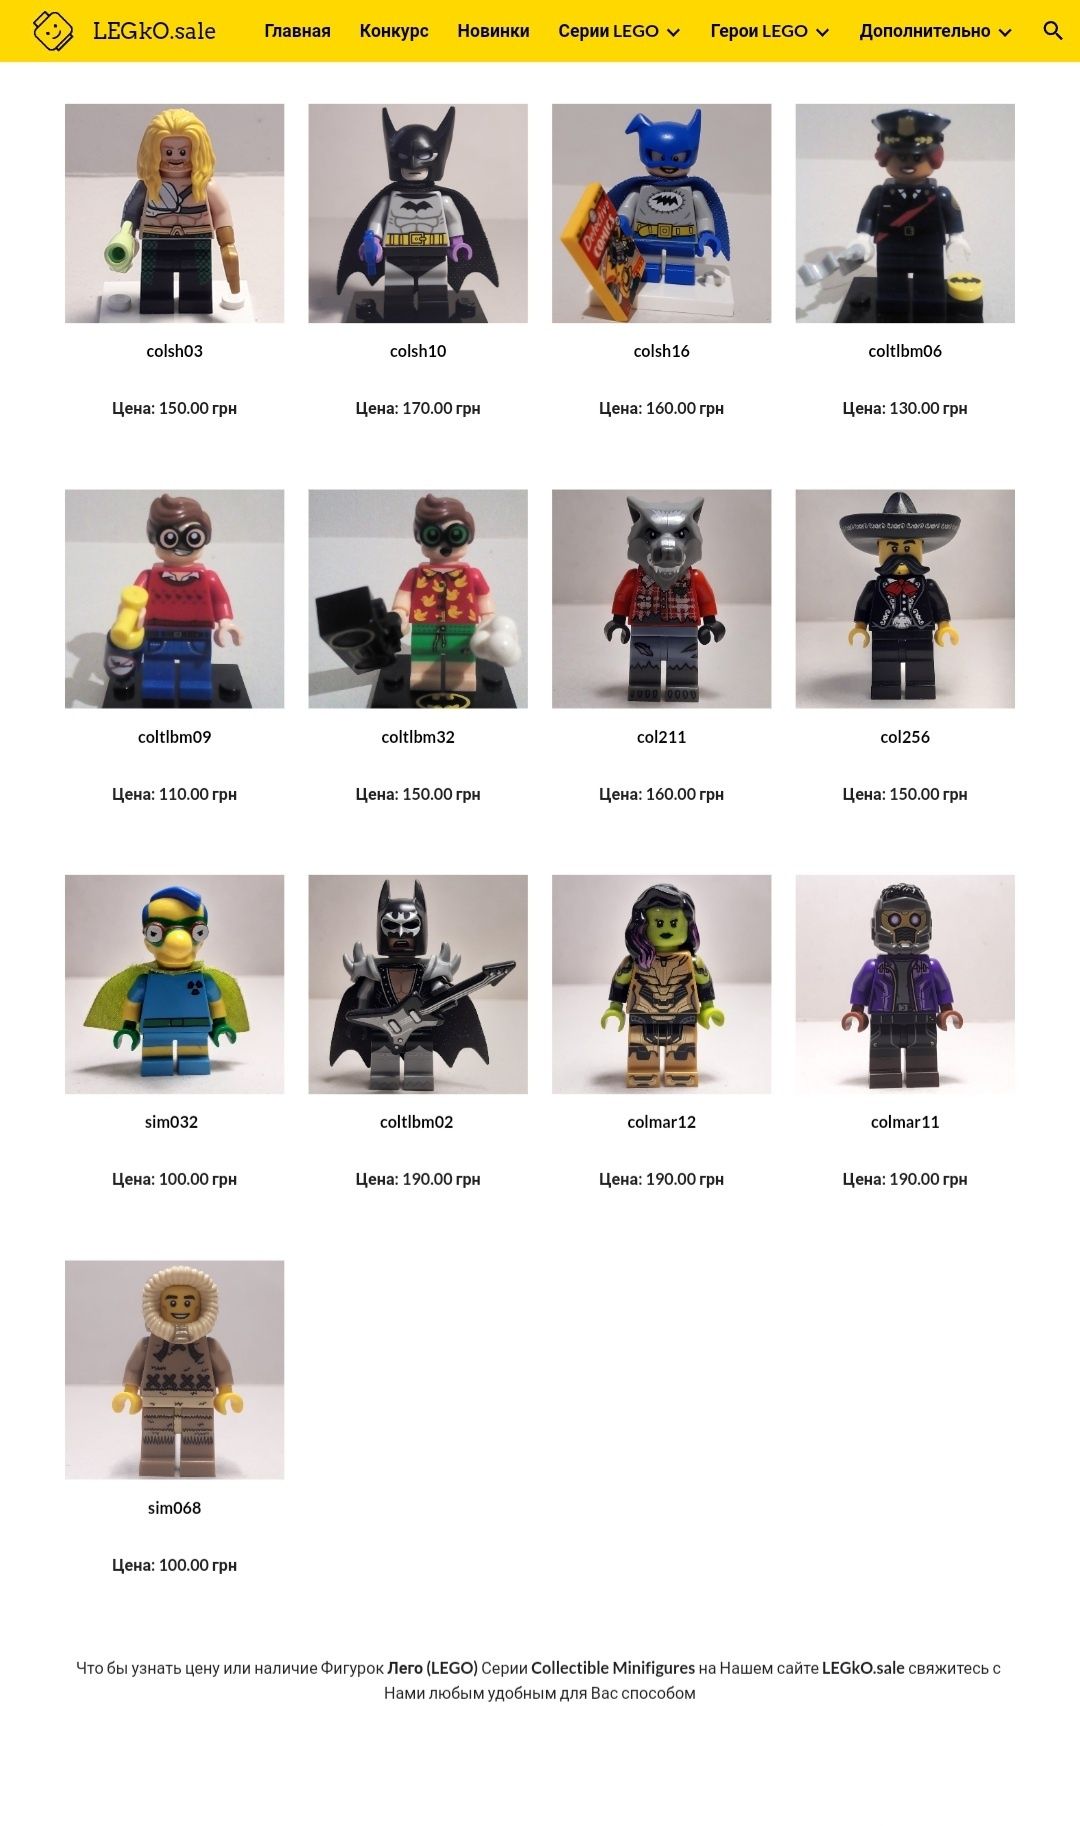 Lego (лего) фигурки Collectible Minifigures разных серий - оригинал